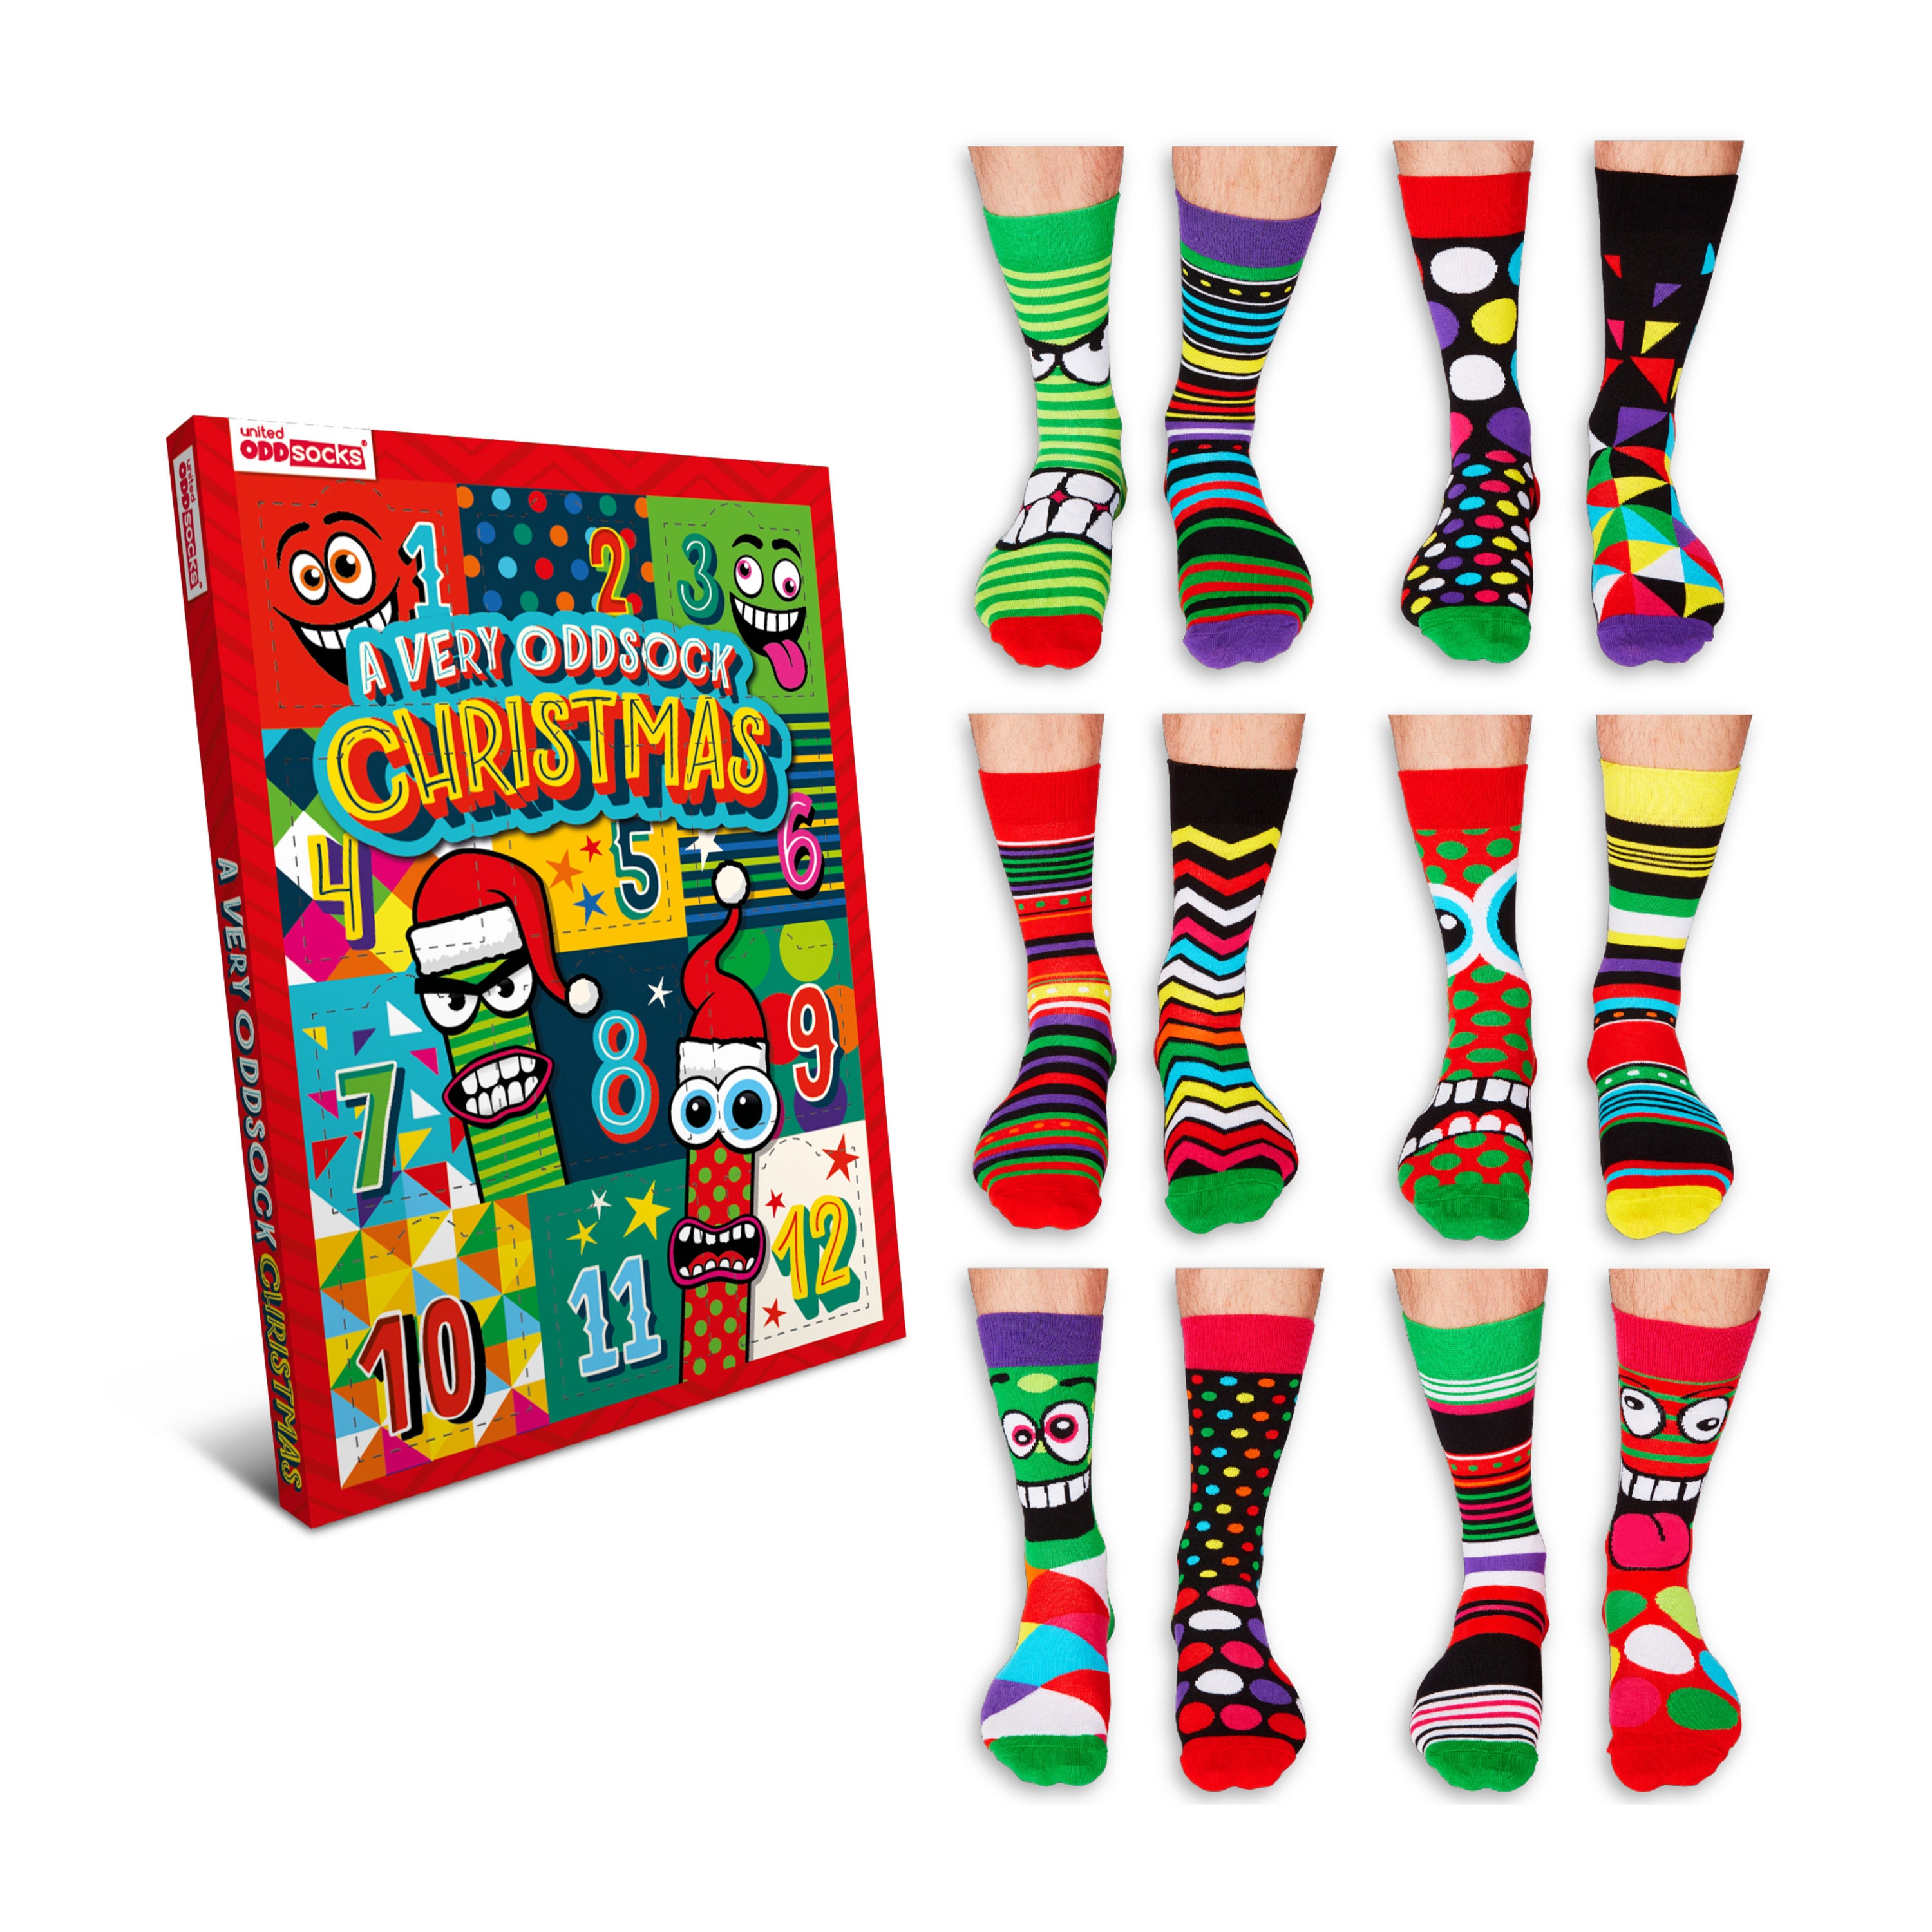 Men’s Sock Advent Calendar For Christmas, Presents, Secret Santa, Stocking Filler Present, Christmas Sock Gift Set, Gift Him